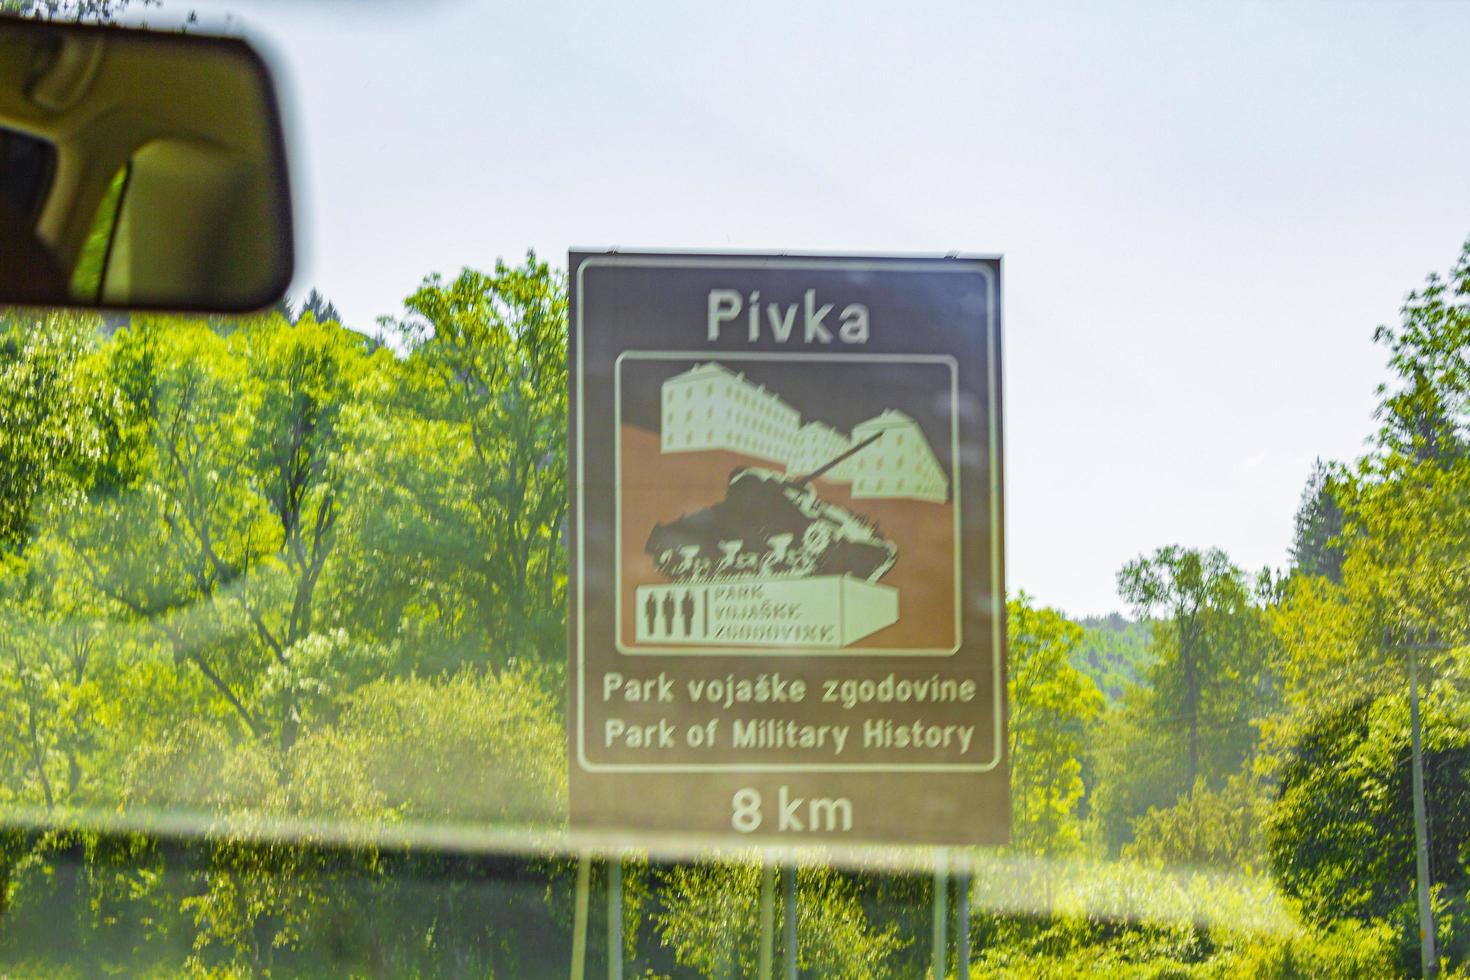 postojna pivka park van militaire geschiedenis toeristische attracties in slovenië. foto